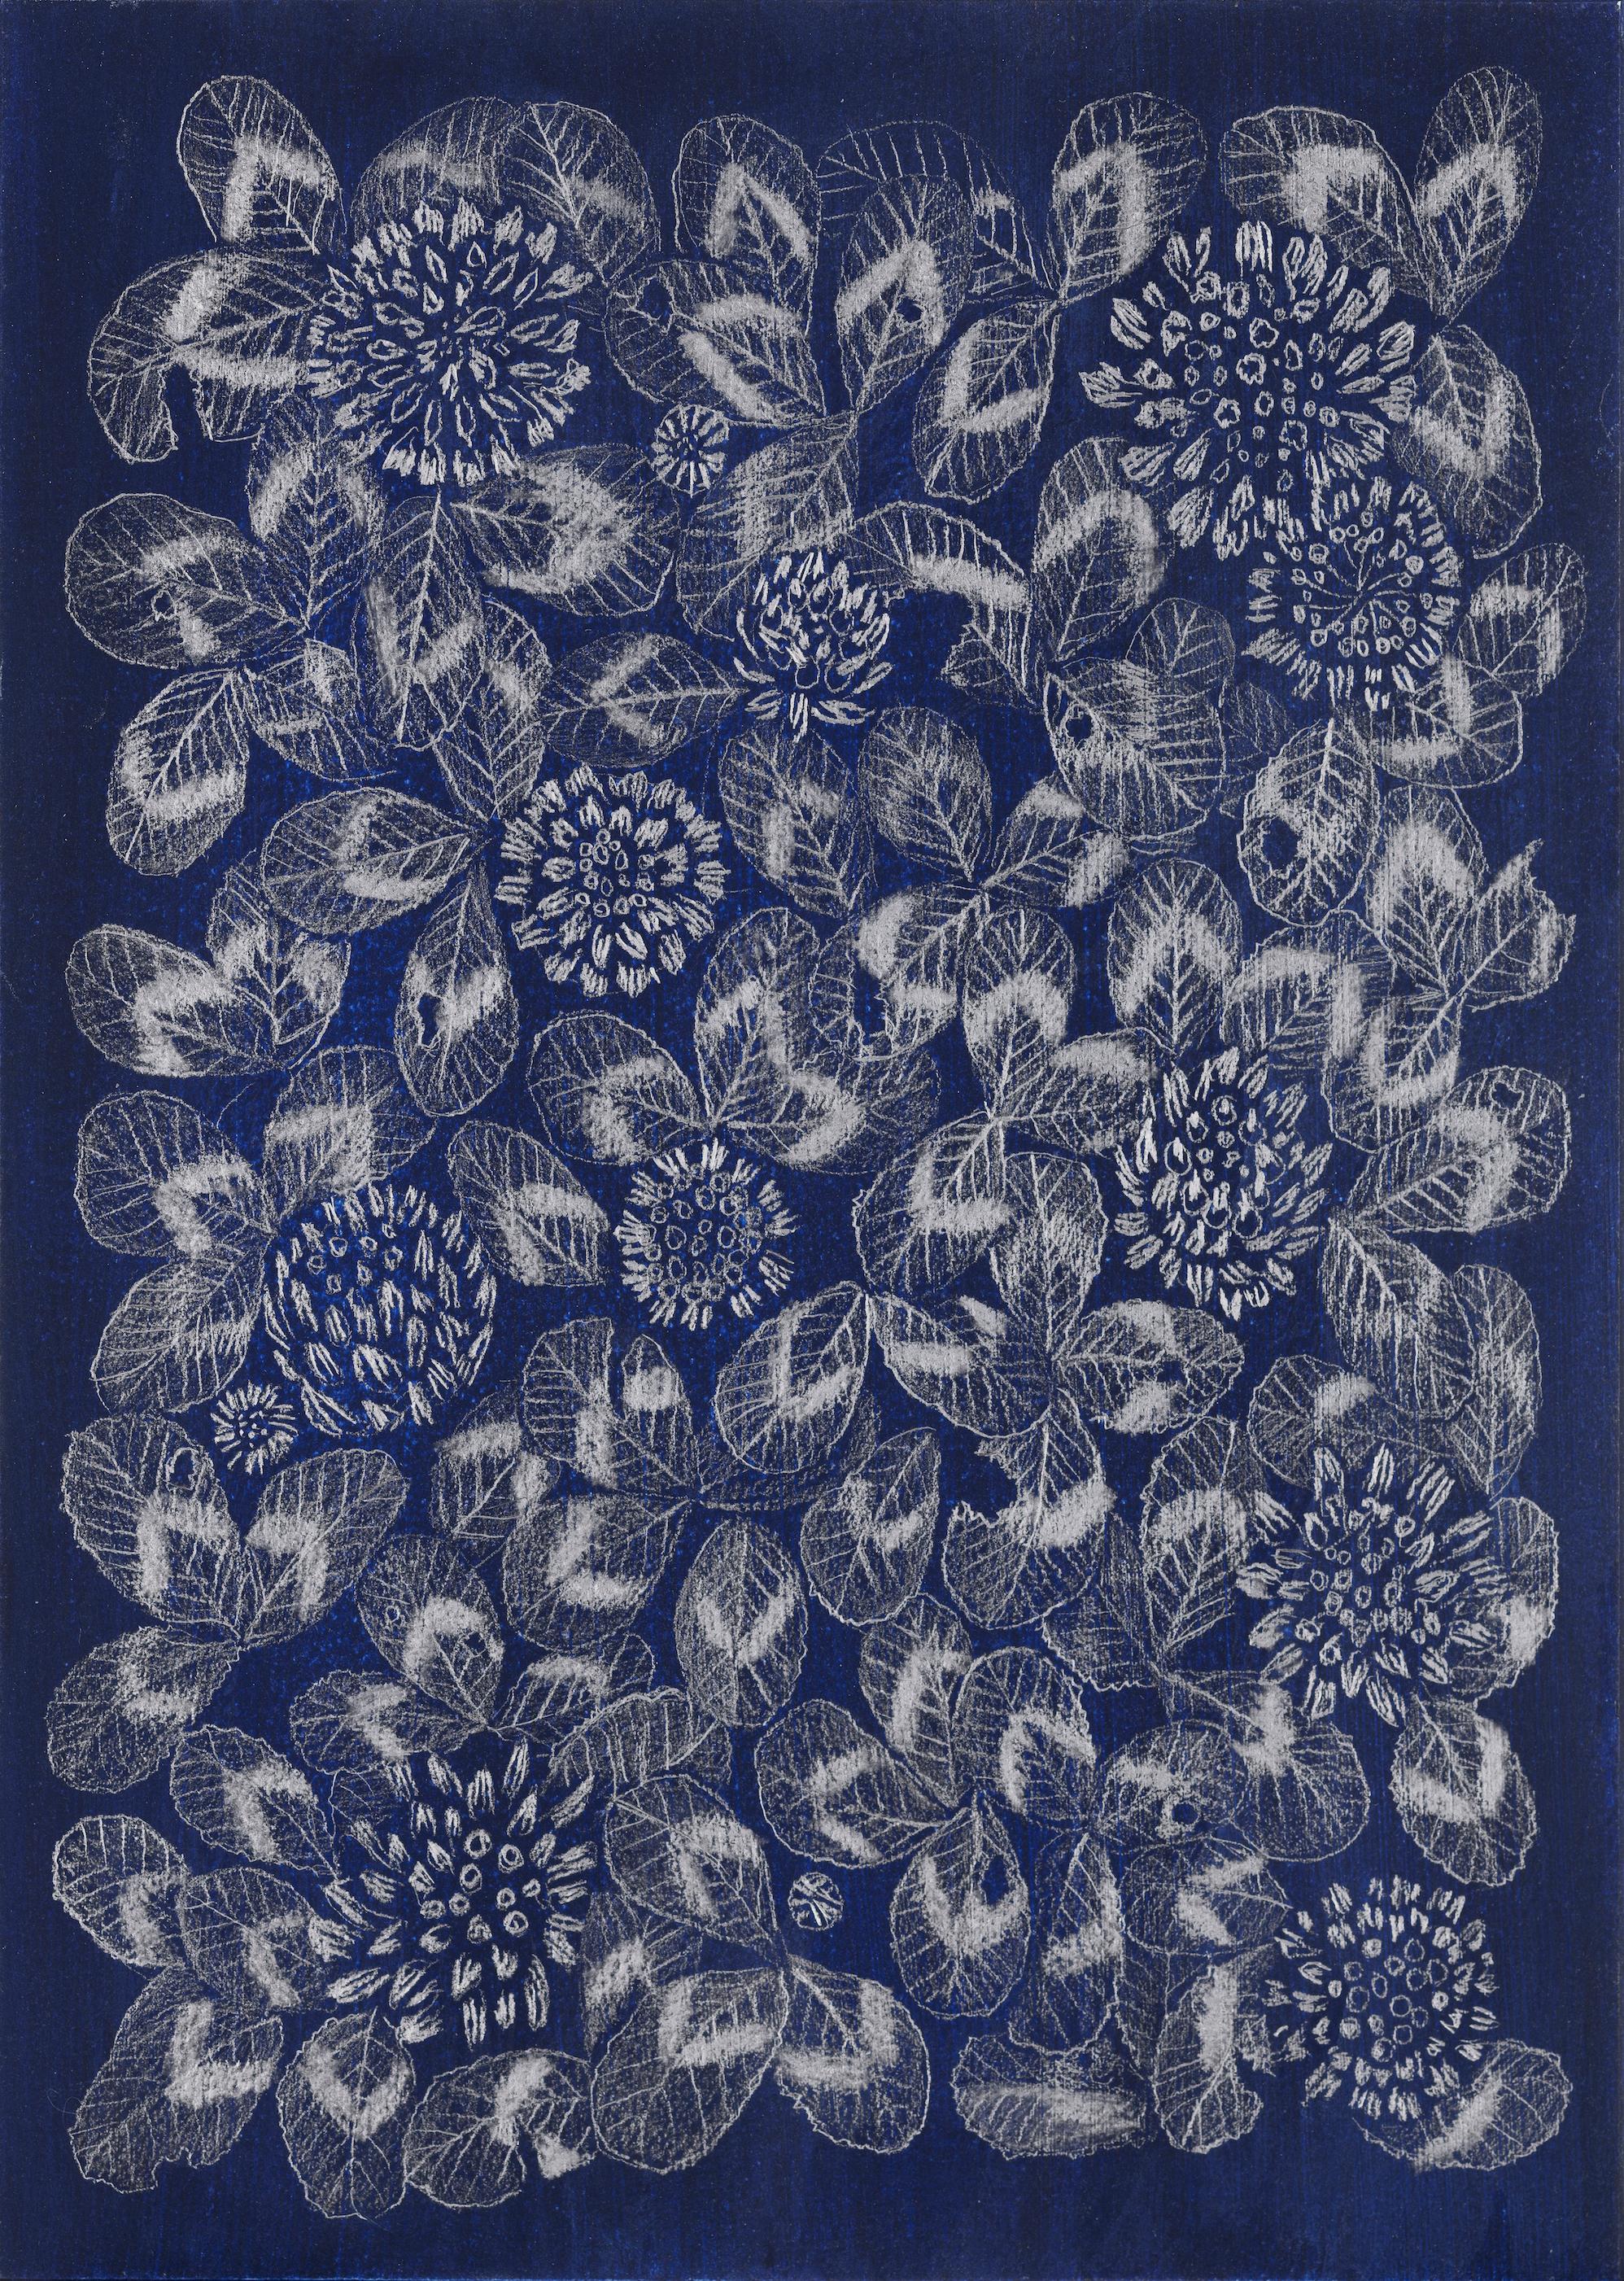 Blauer Kleeblatt 2, gemusterte Blumenstillleben-Zeichnung